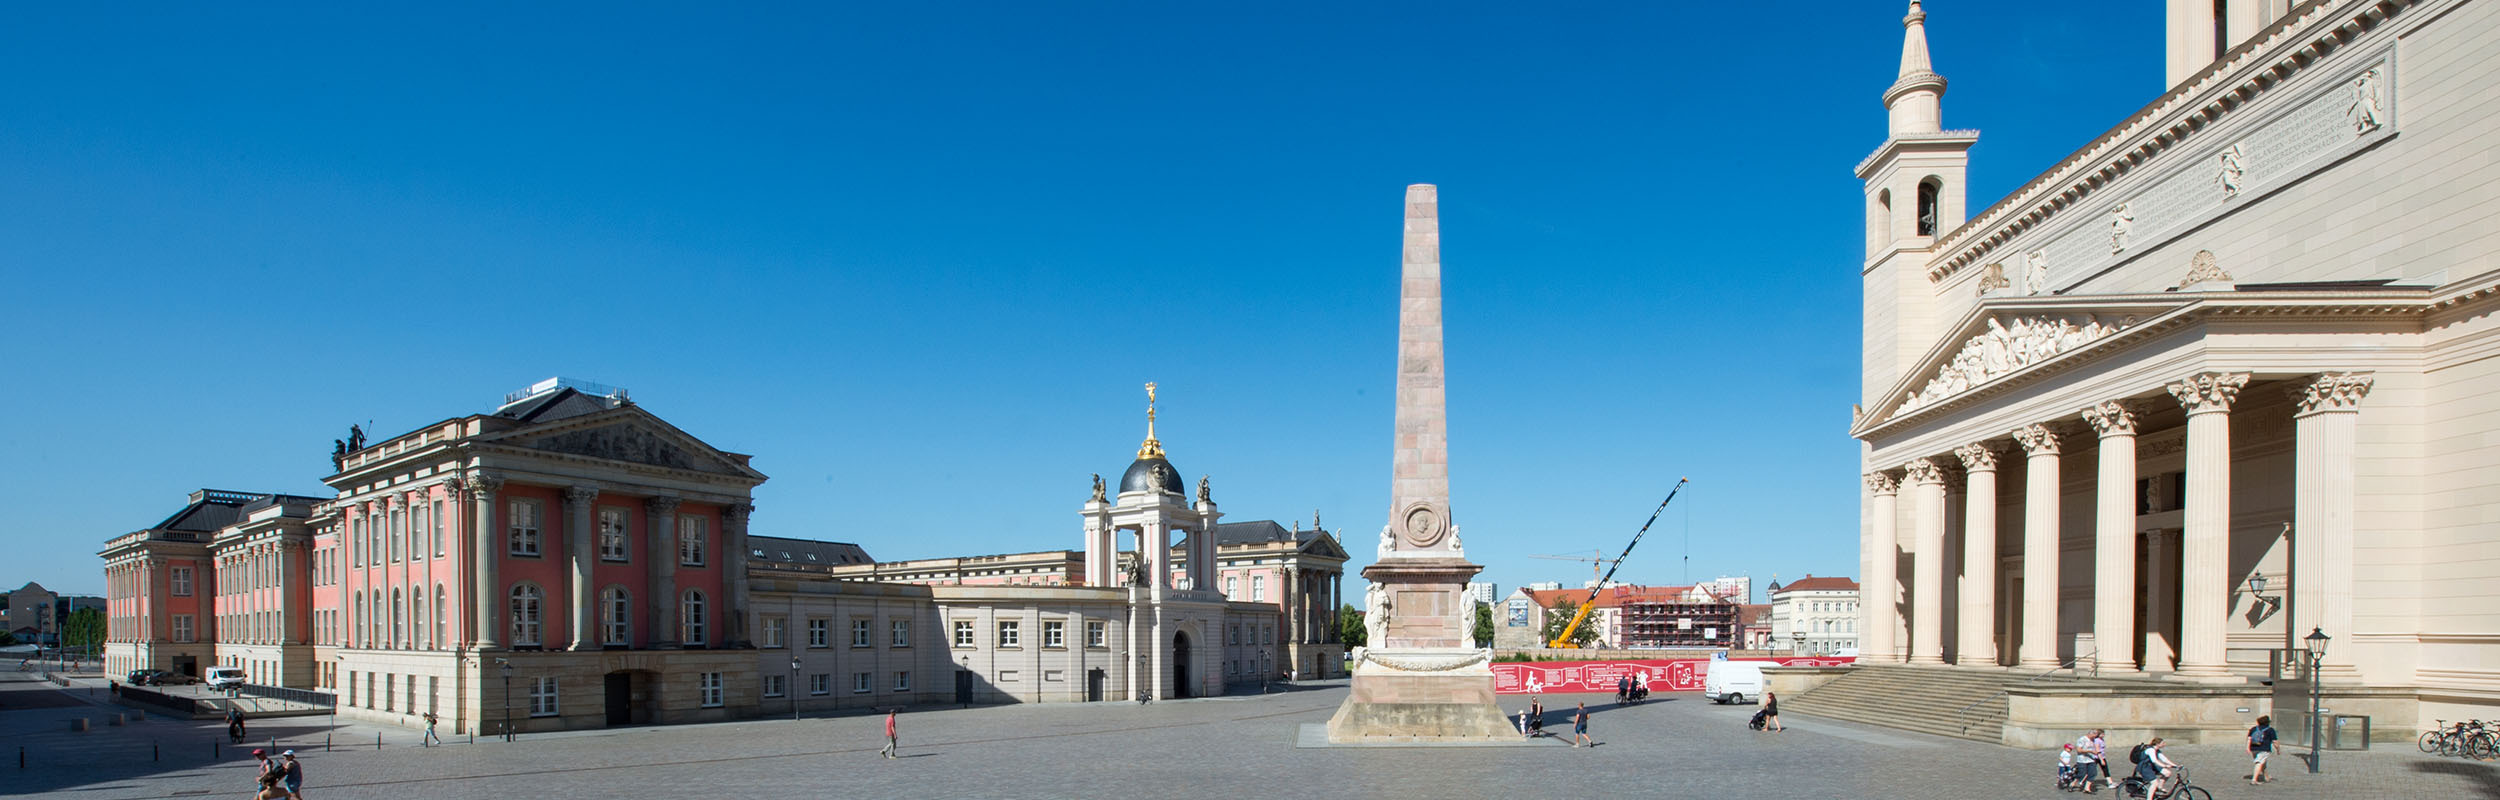 Foto: Unter blauem Himmel finden sich links der Landtag mit Fortunaportal, mittig der Obelisk, rechts der Portikus der Nikolaikirche und im Hintergrund Bauzaun und Kran von Block III.